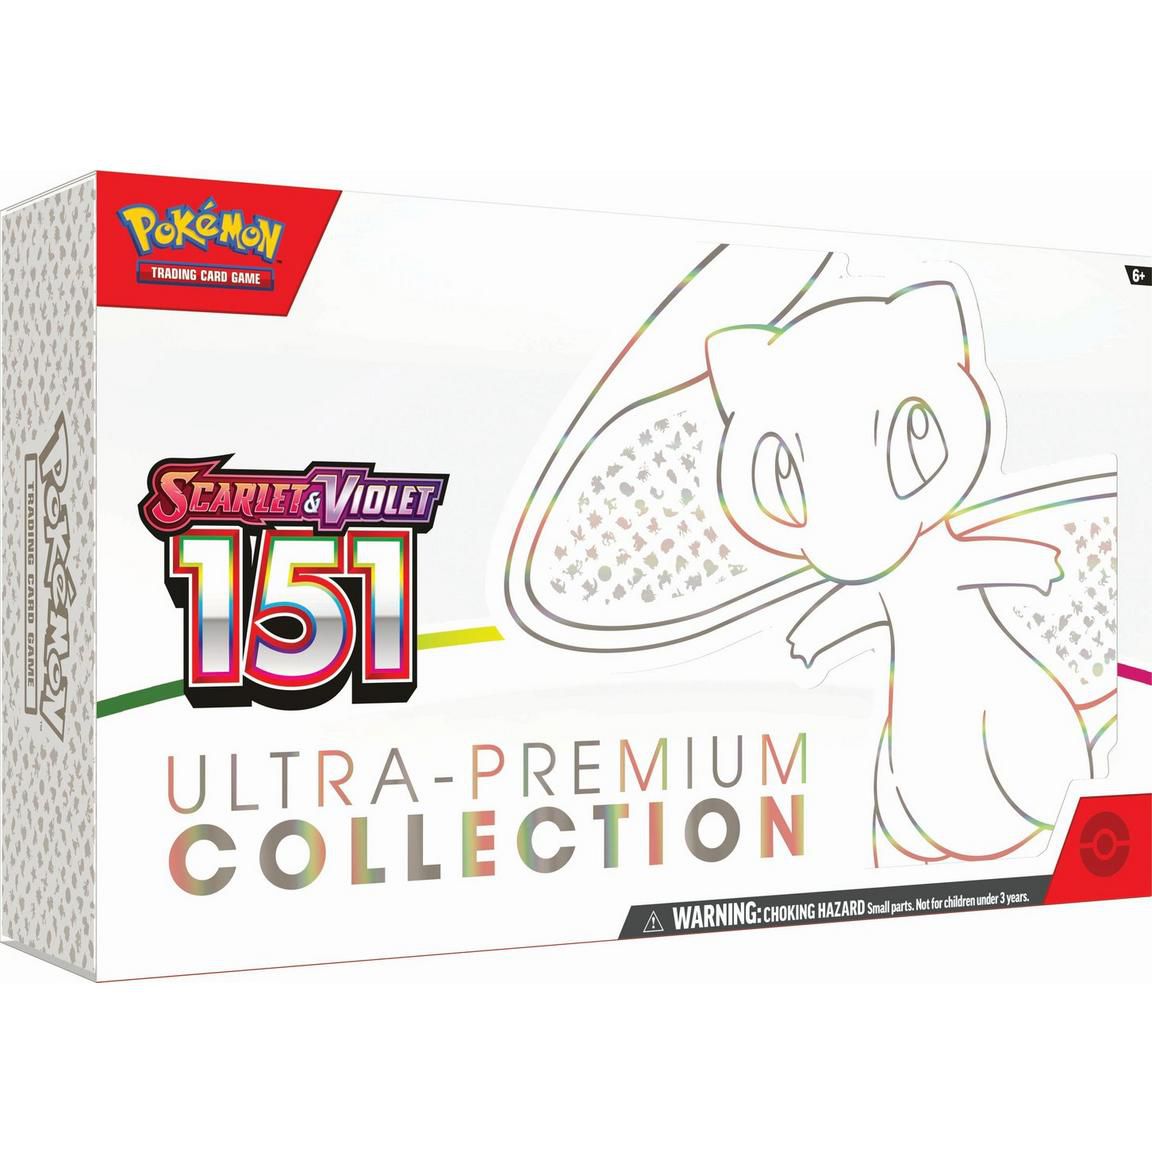 Una caja grande de Pokémon Scarlet y Violet: 151 Collection TCG con Mew presentado en el frente